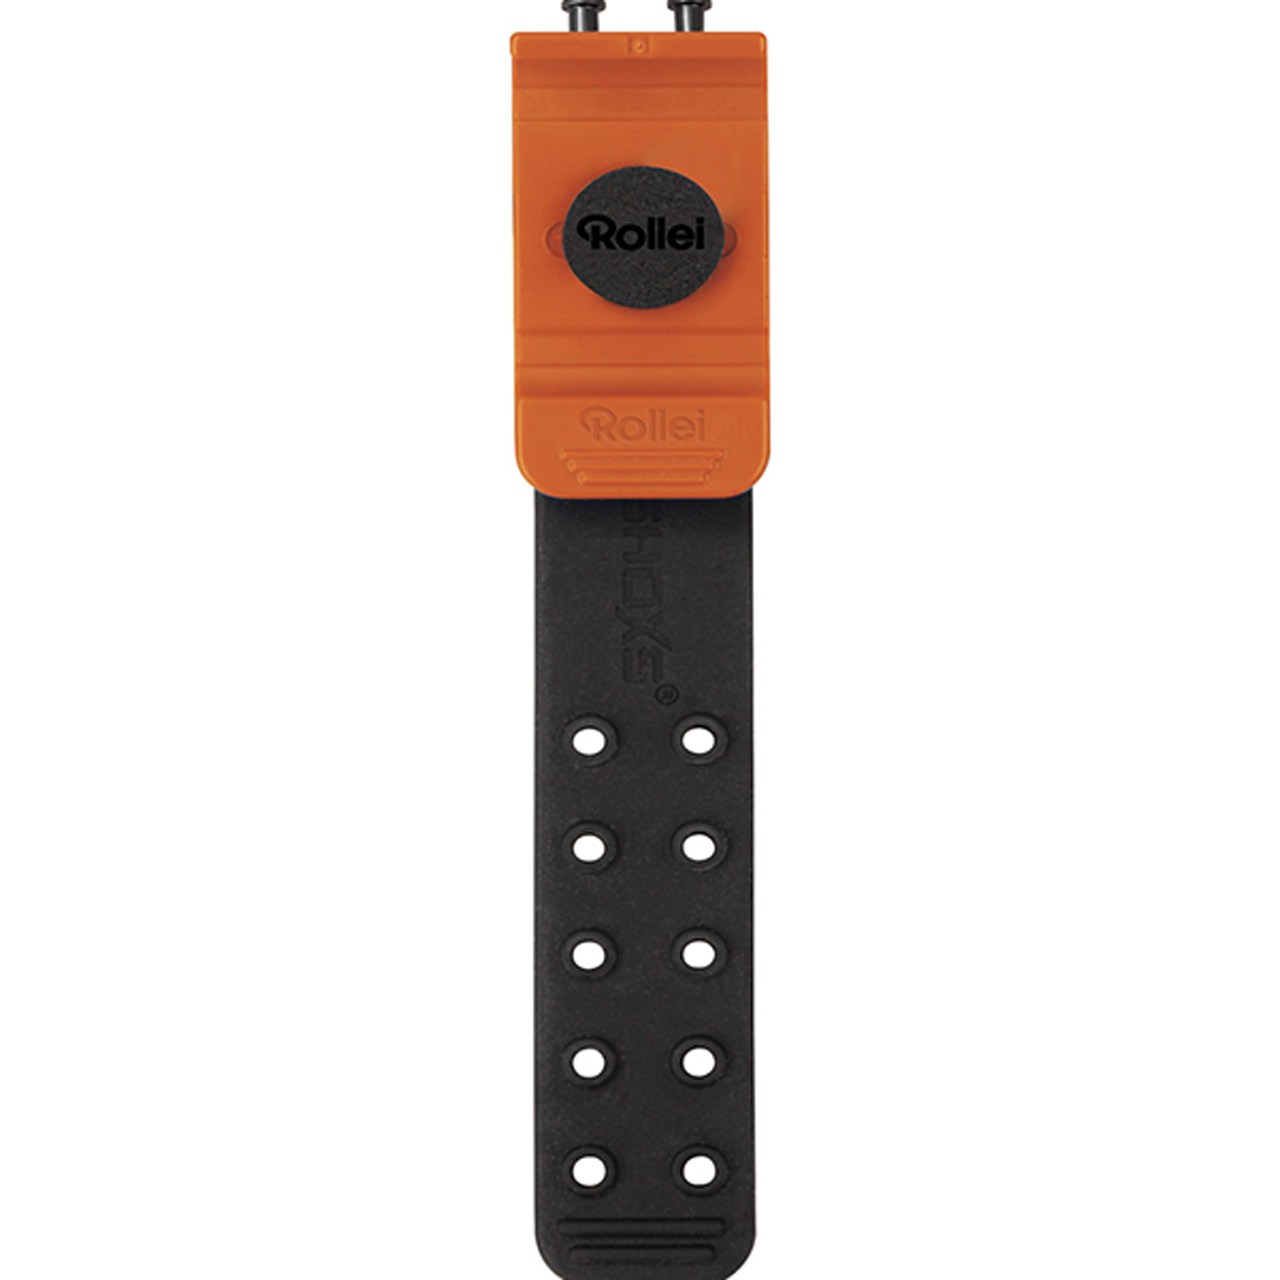 ماونت ریموت کنترل Rollei مدل remote control mount Gopro  مناسب برای گوپرو